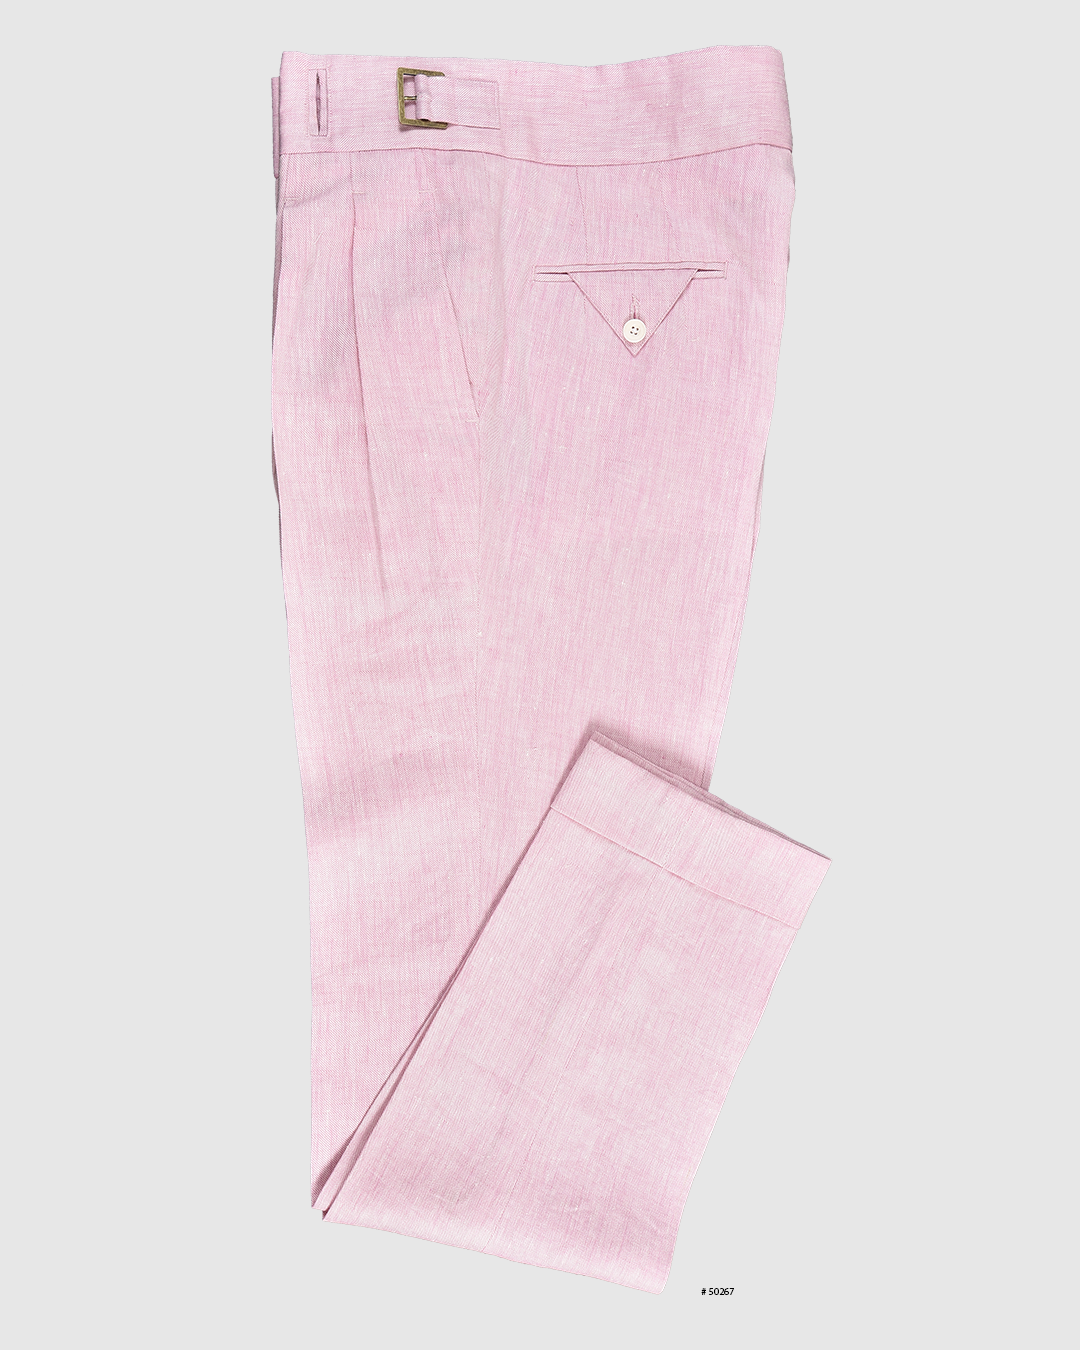 Gurkha Pants in Linen Pink Twill